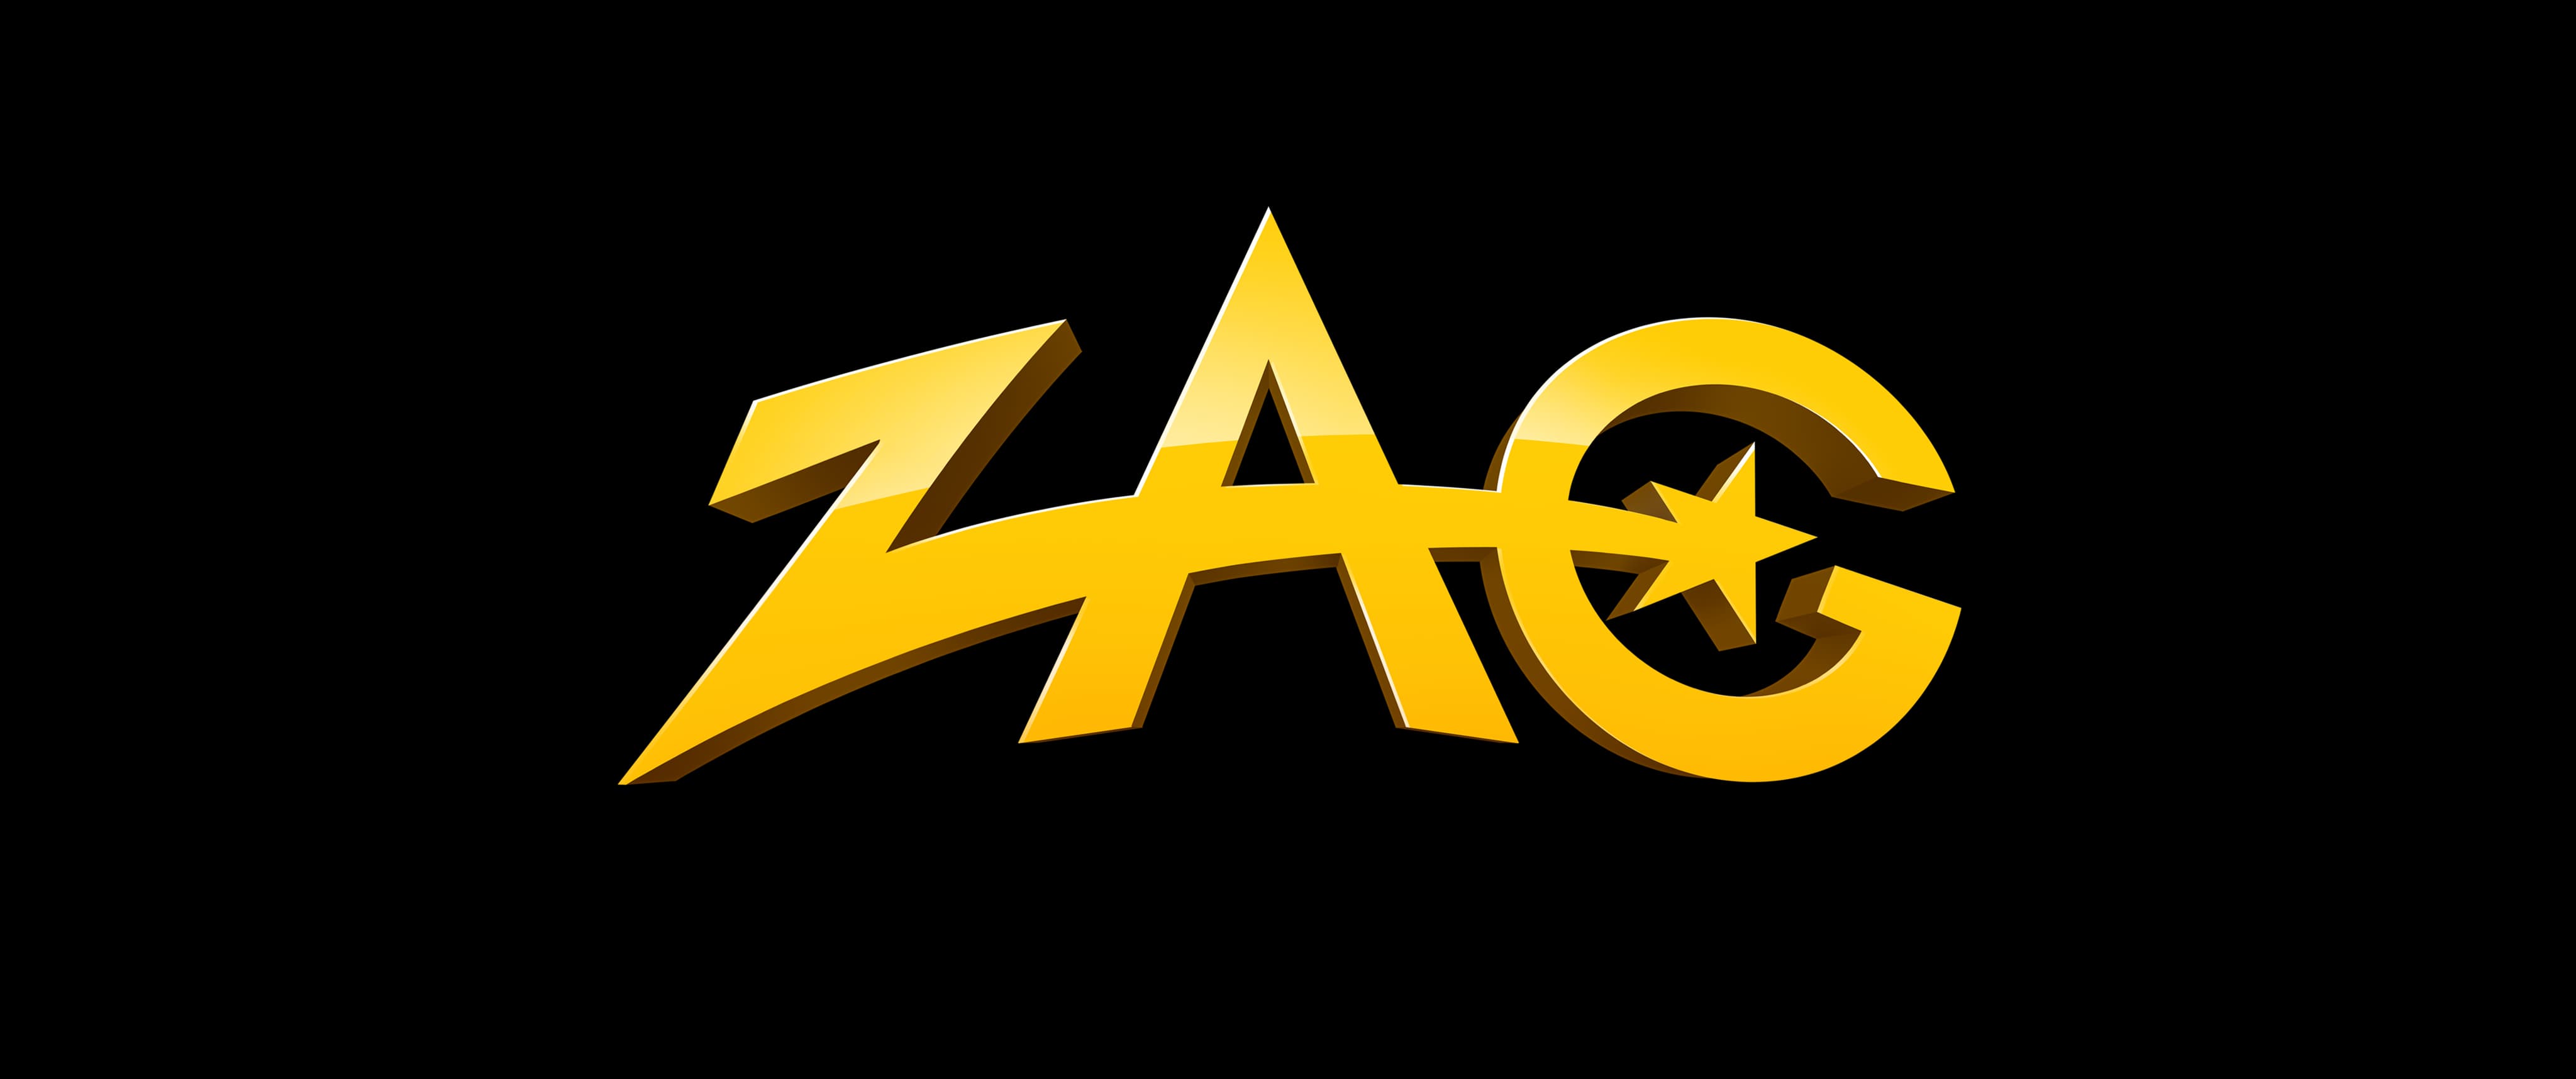 Zag logo